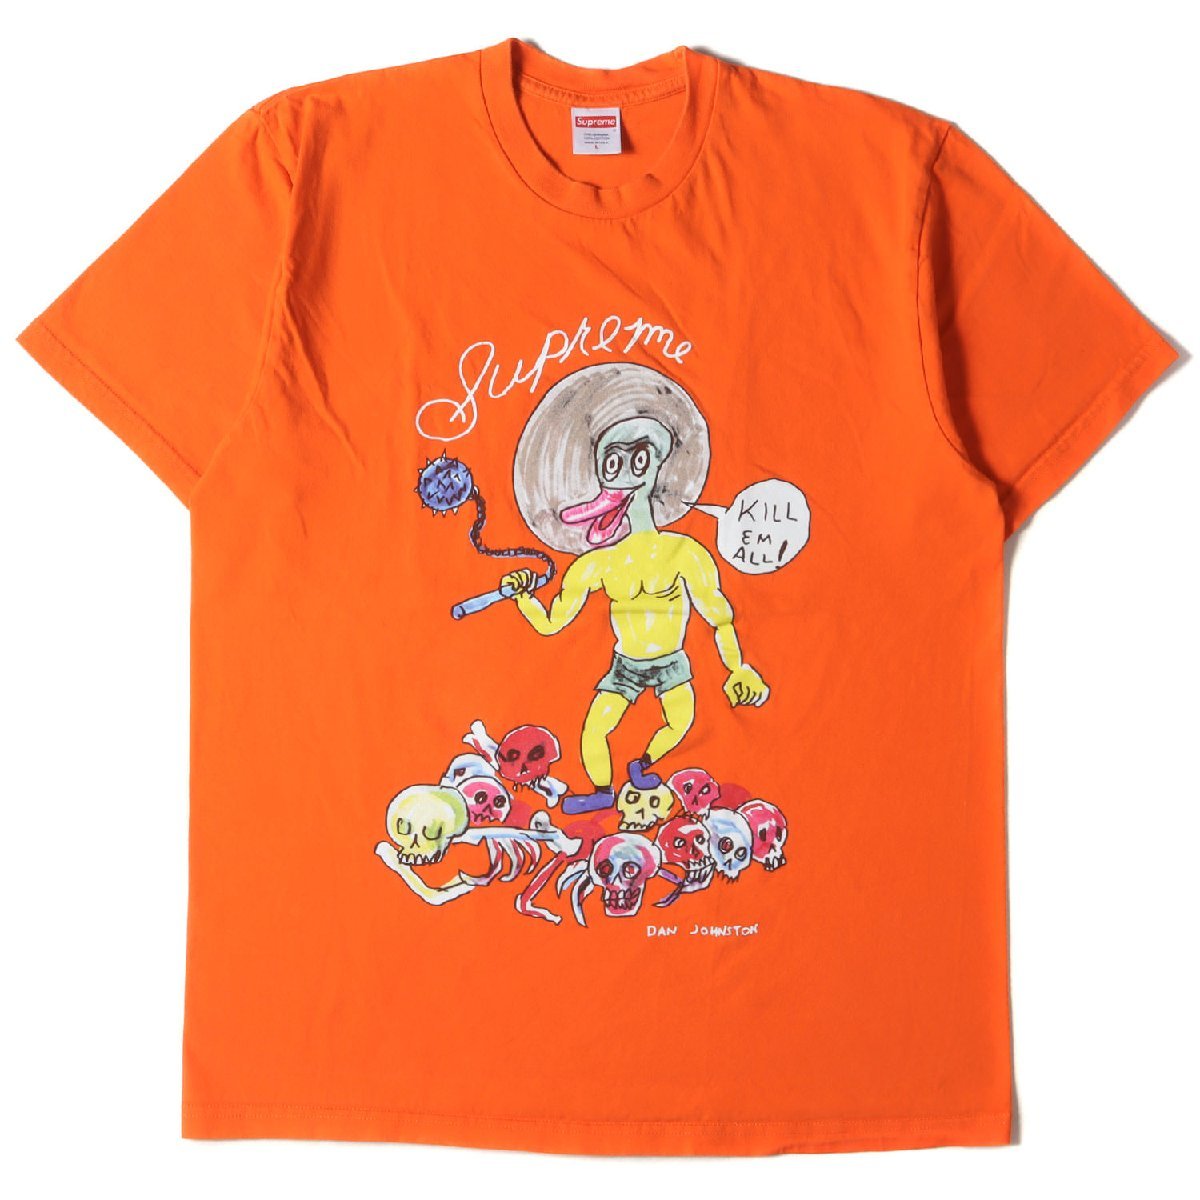 Supreme シュプリーム Tシャツ サイズ:L Daniel Johnston イラスト グラフィック クルーネック Kill Em All Tee 20SS オレンジ トップス